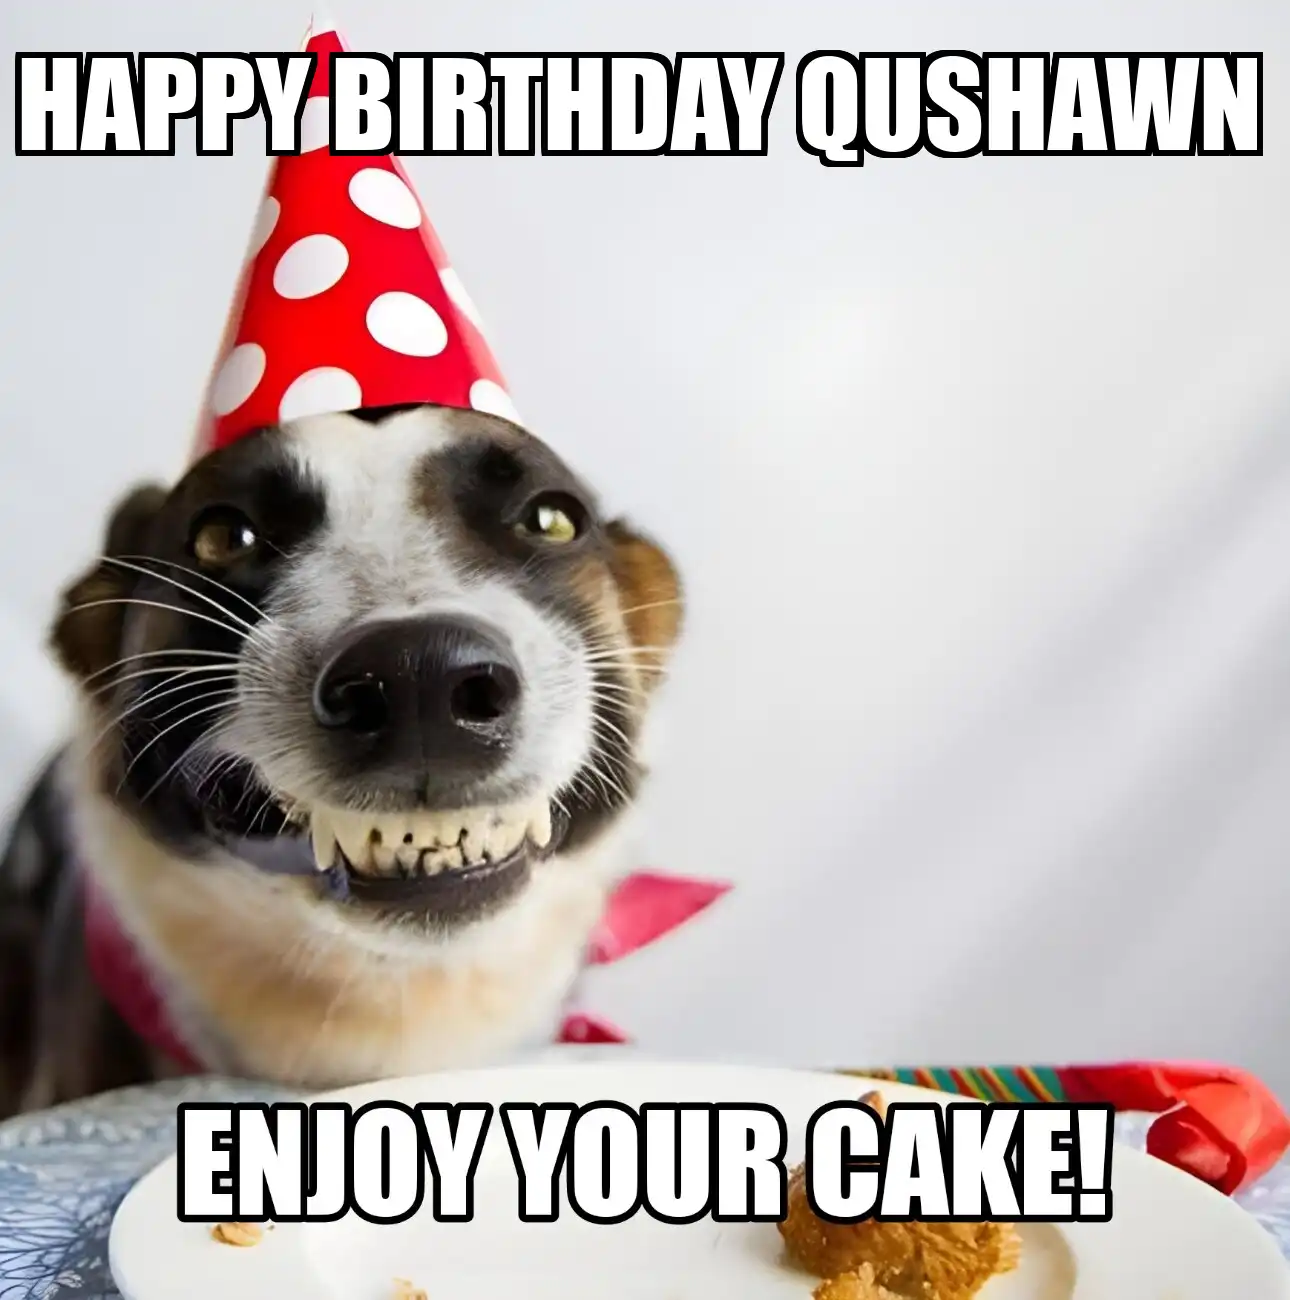 Happy Birthday Qushawn Enjoy Your Cake Dog Meme